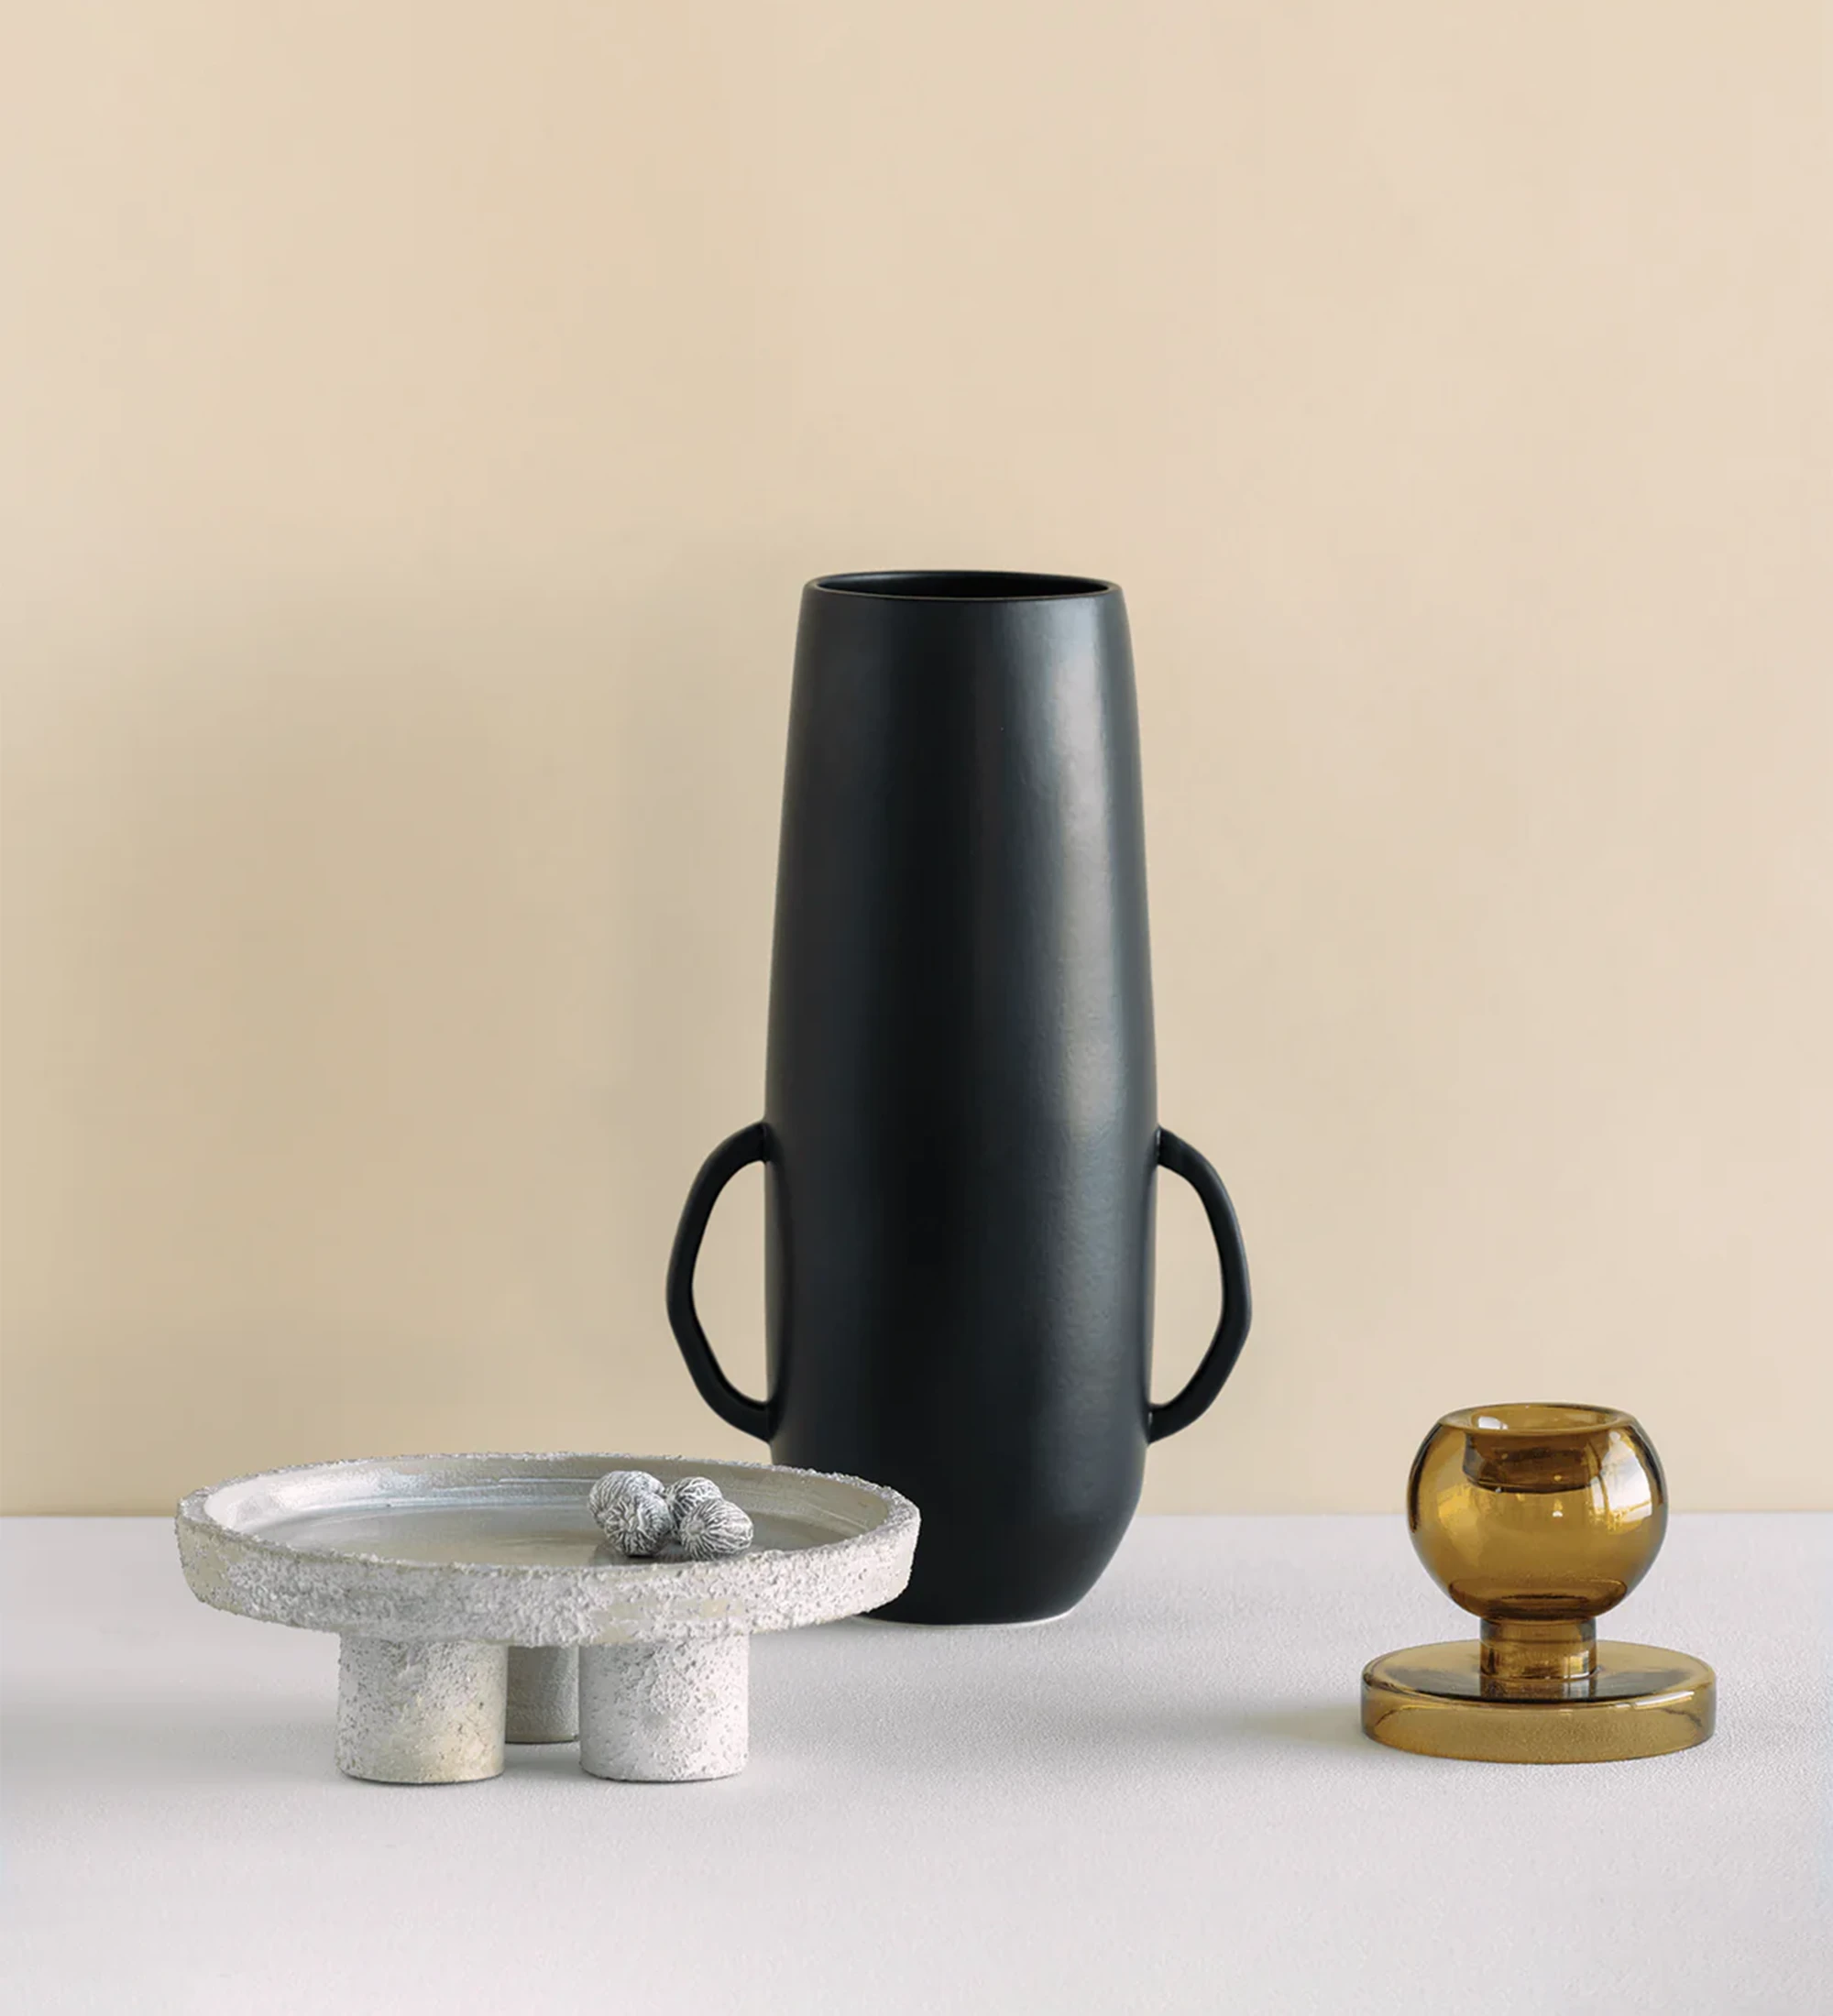 Vase fait main avec structure en céramique noir mat et au design organique et intuitif.